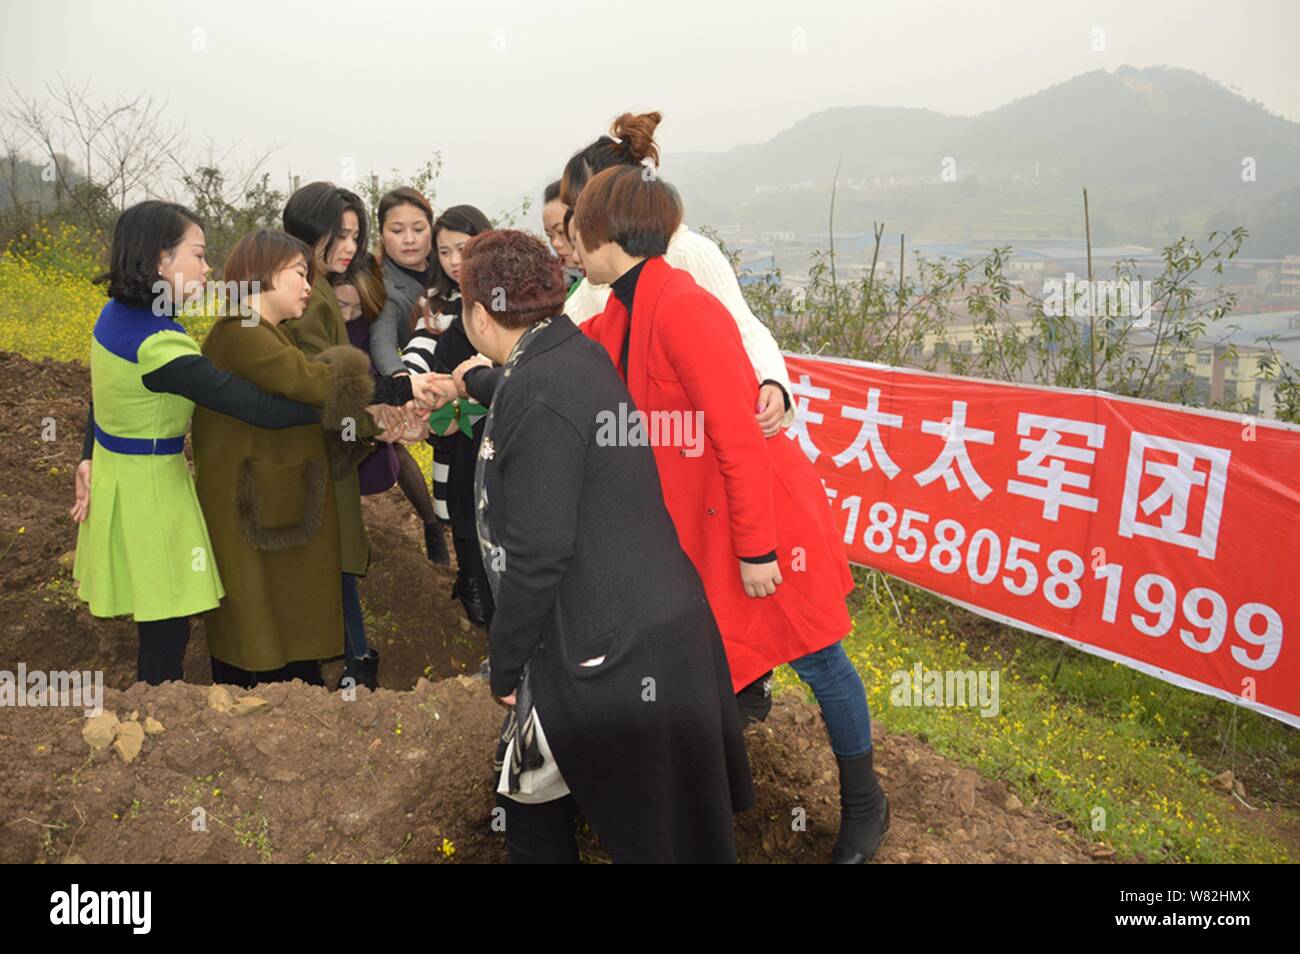 Les femmes chinoises s'applaudir après être resté dans des "tombes" au cours d'un rituel peu commun pour aider les divorcés à faire face à leur rupture du mariage dans l'out Banque D'Images